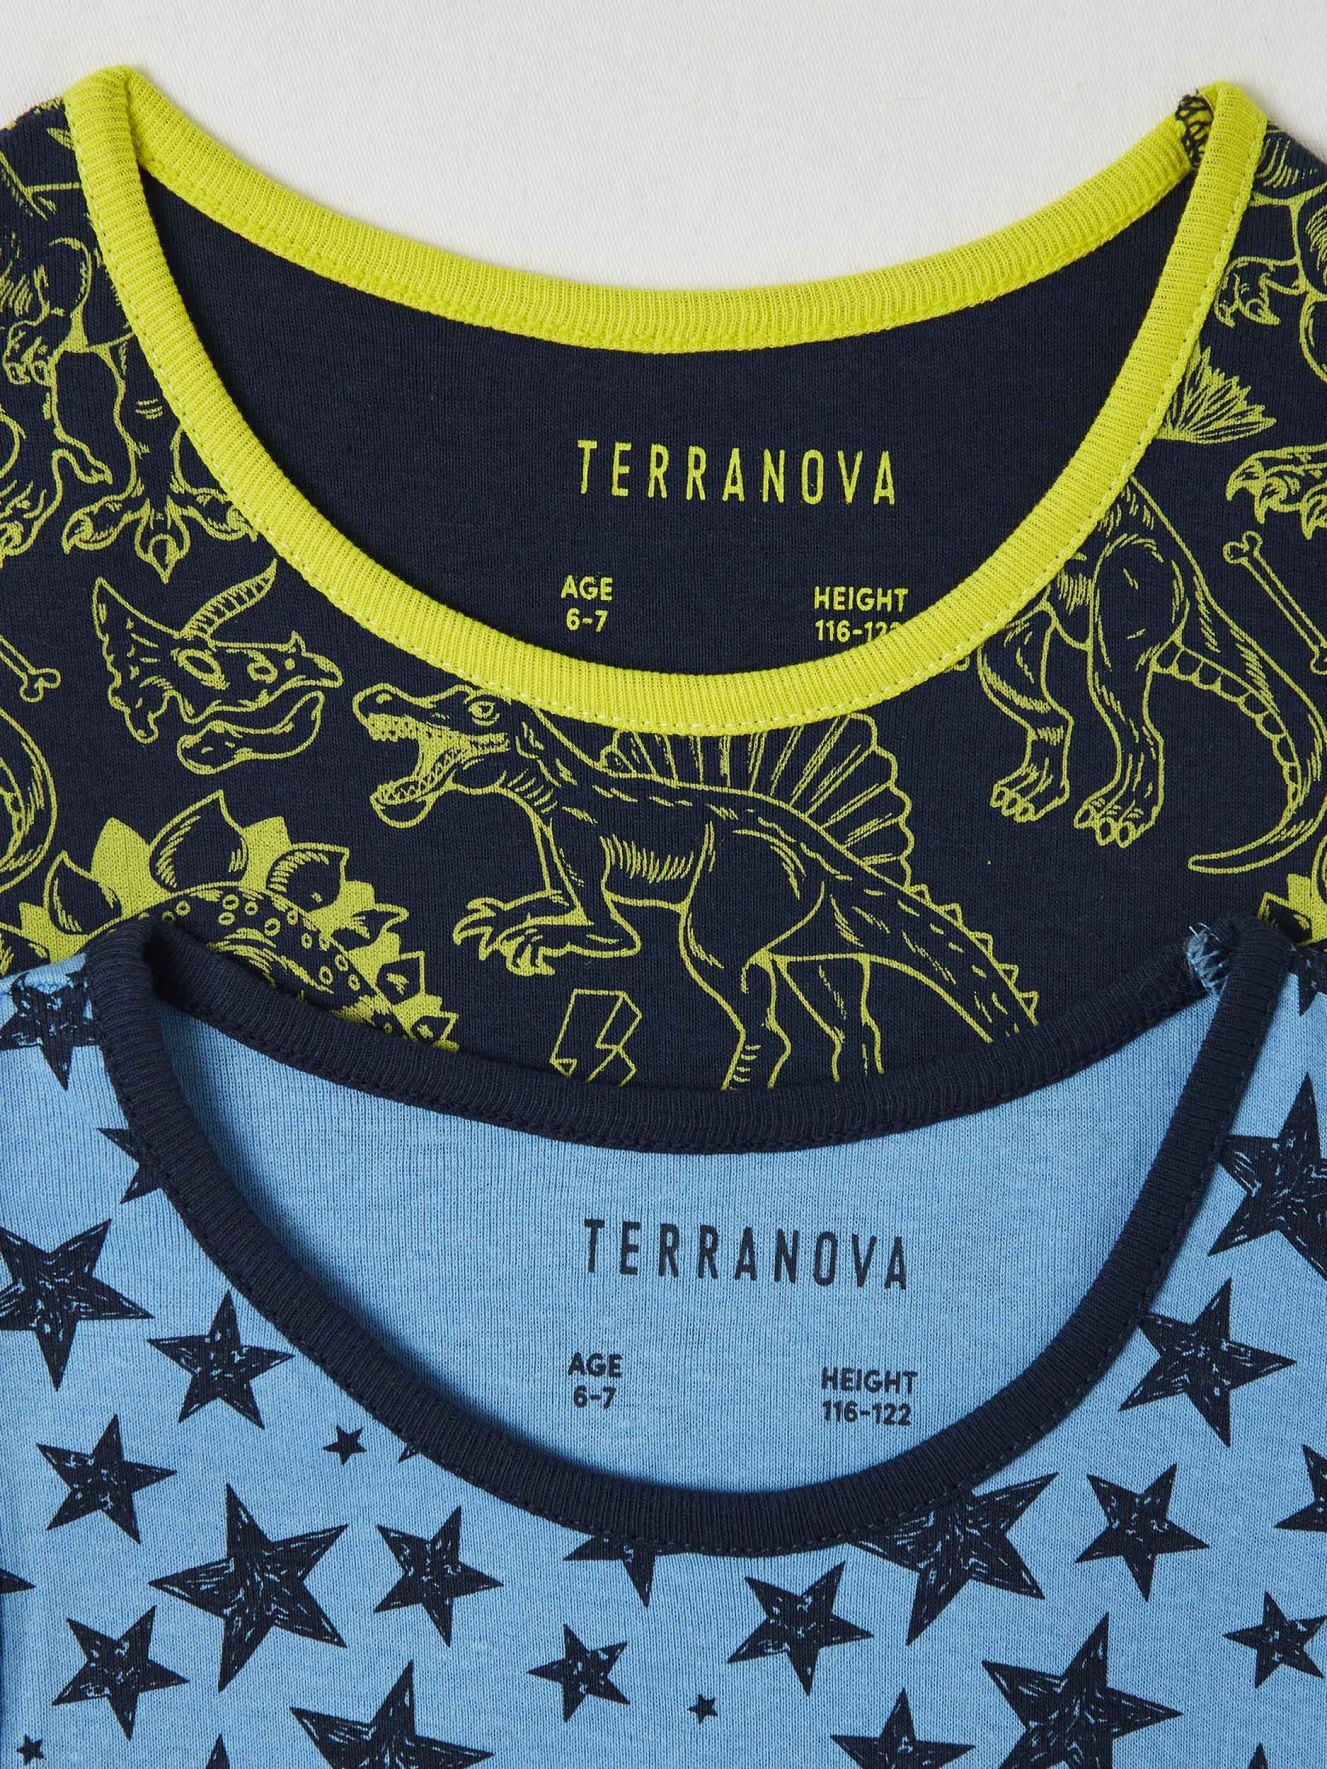 Camiseta nino Terranova